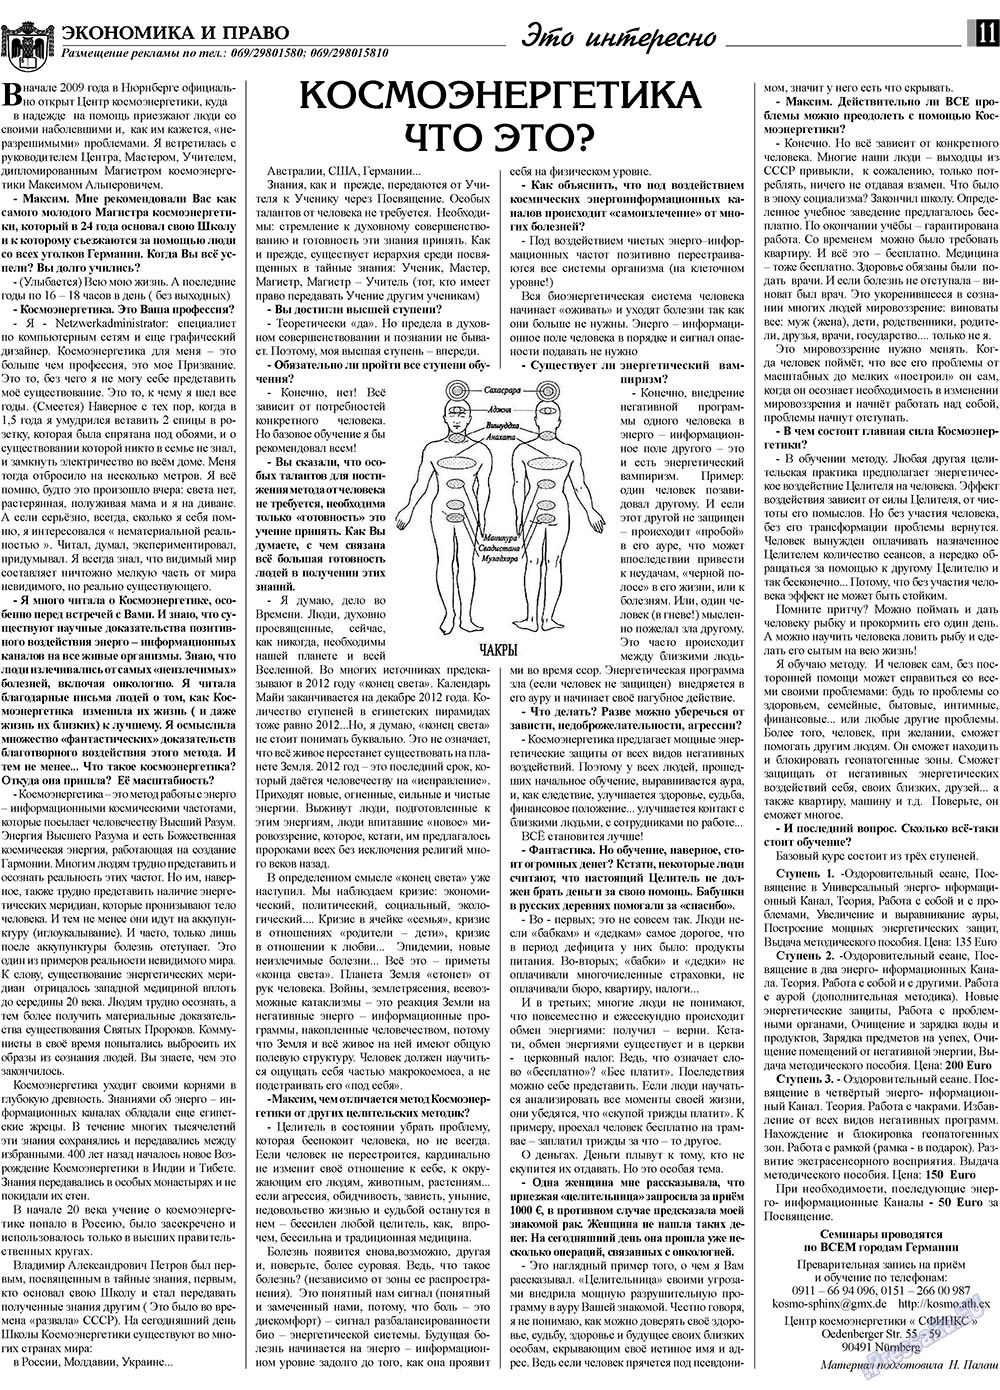 Экономика и право, газета. 2009 №7 стр.11